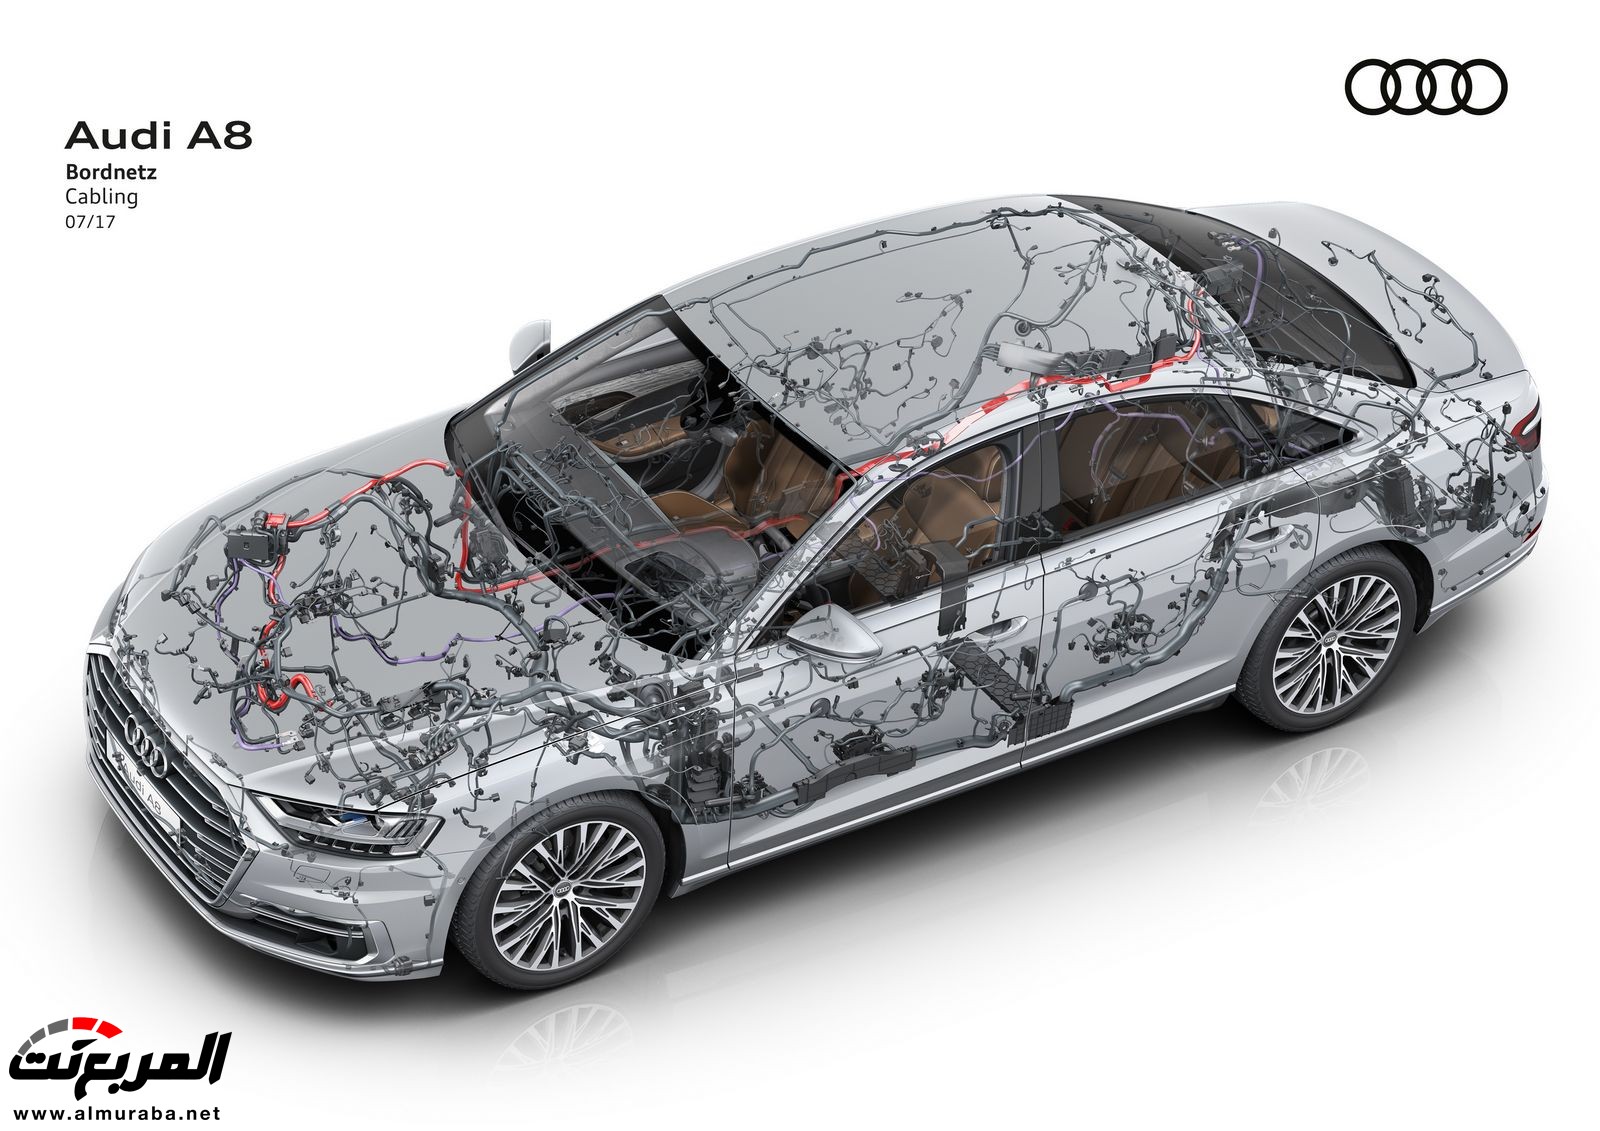 أودي A8 2018 الجديدة كلياً تكشف نفسها بتصميم وتقنيات متطورة "معلومات + 100 صورة" Audi A8 101